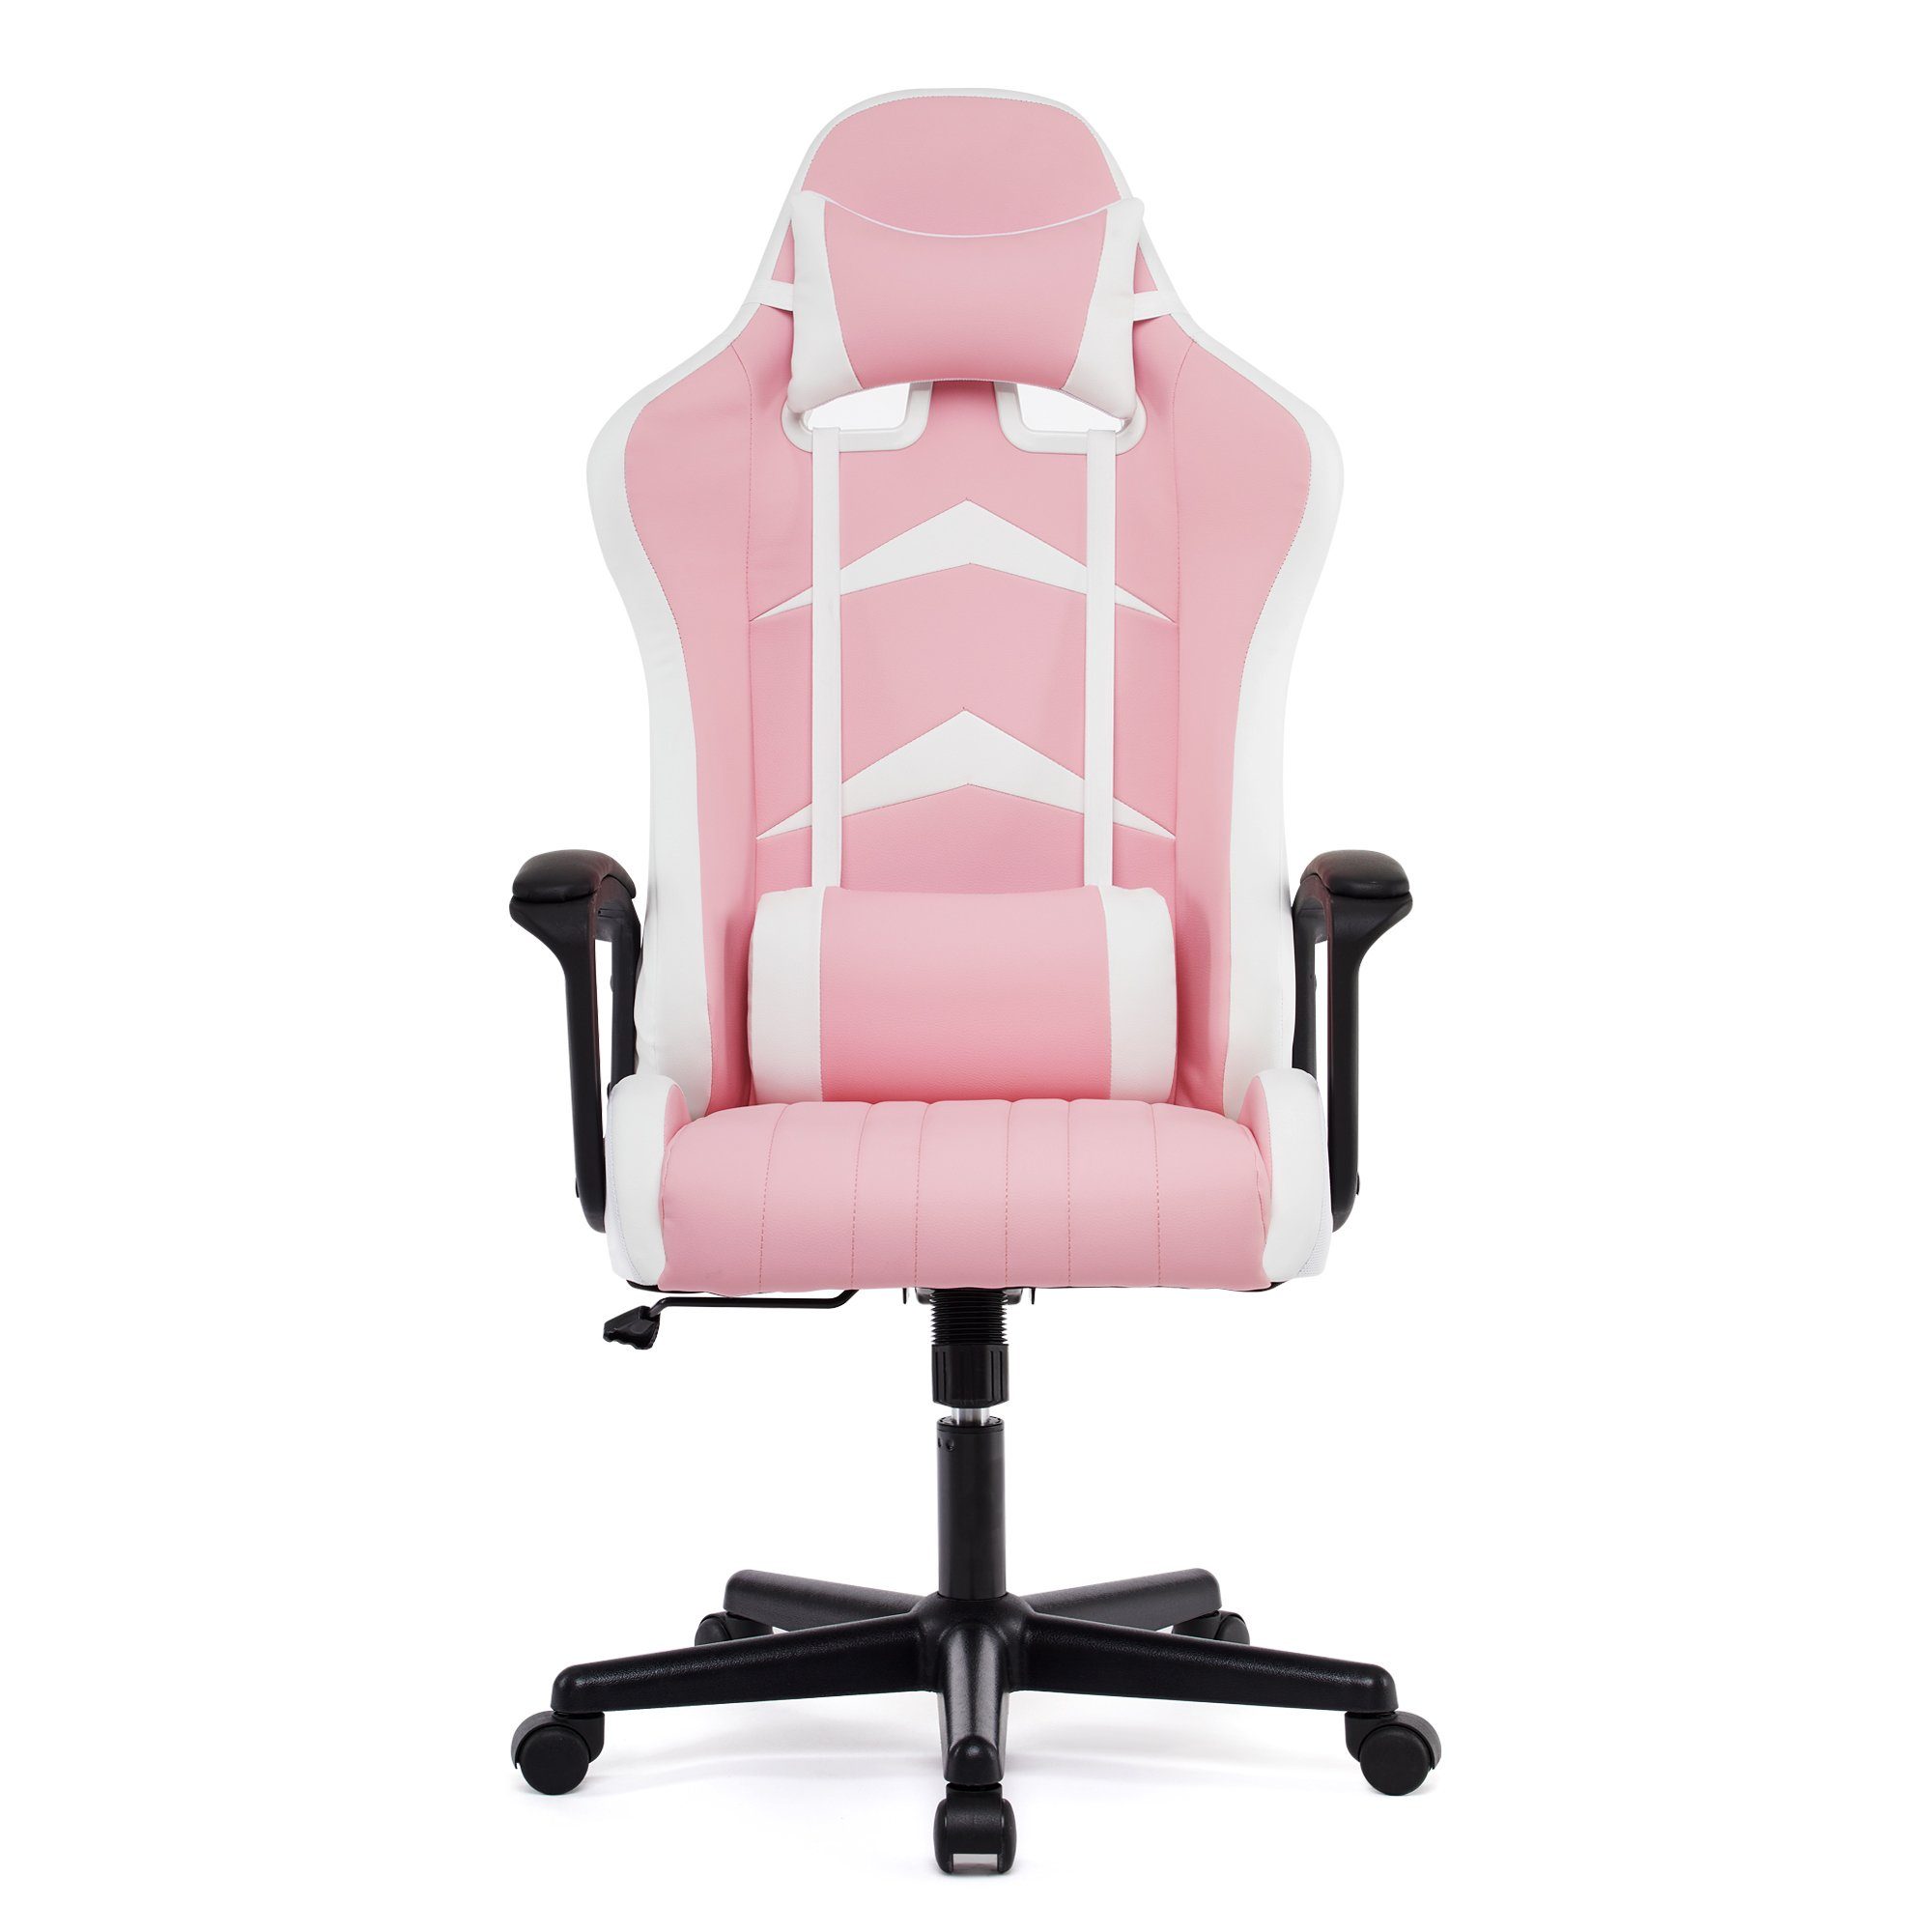 mit WM Ergonomischer hoher Heart Gaming-Stuhl Rückenlehne rosa Verstellbarer Schreibtischstuhl Intimate